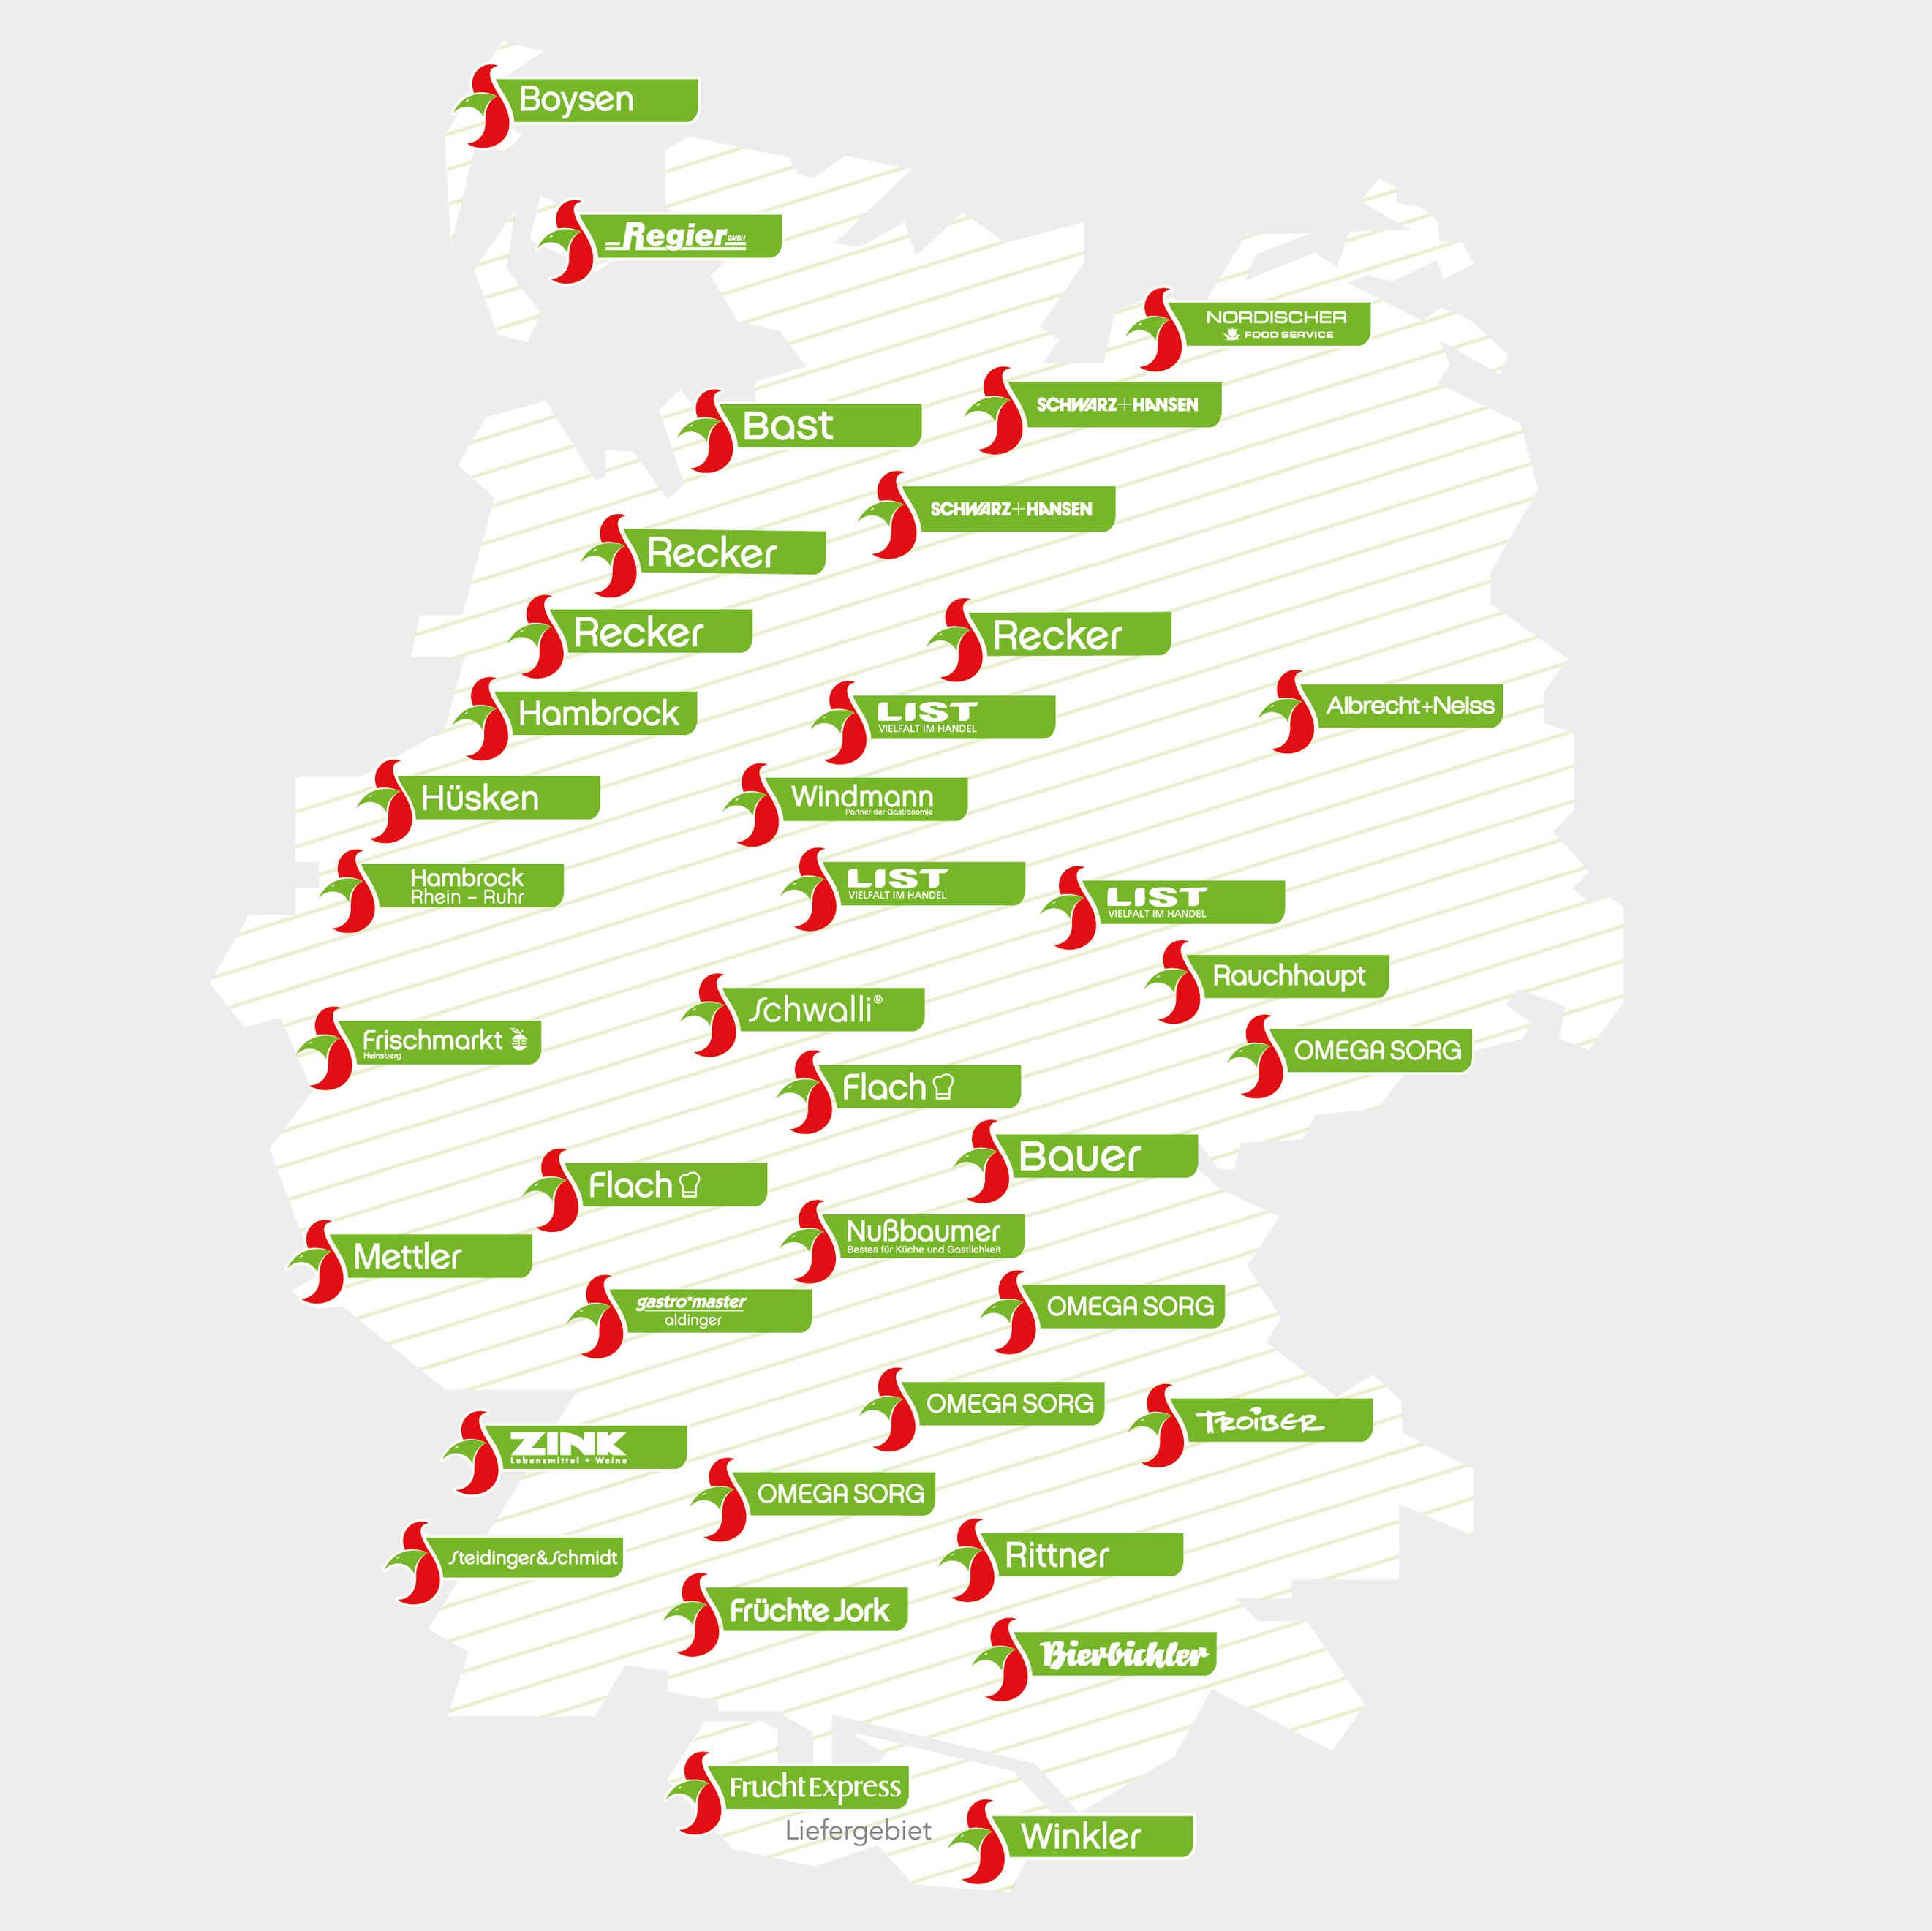 Deutschlandkarte mit allen Service-Bund Standorten